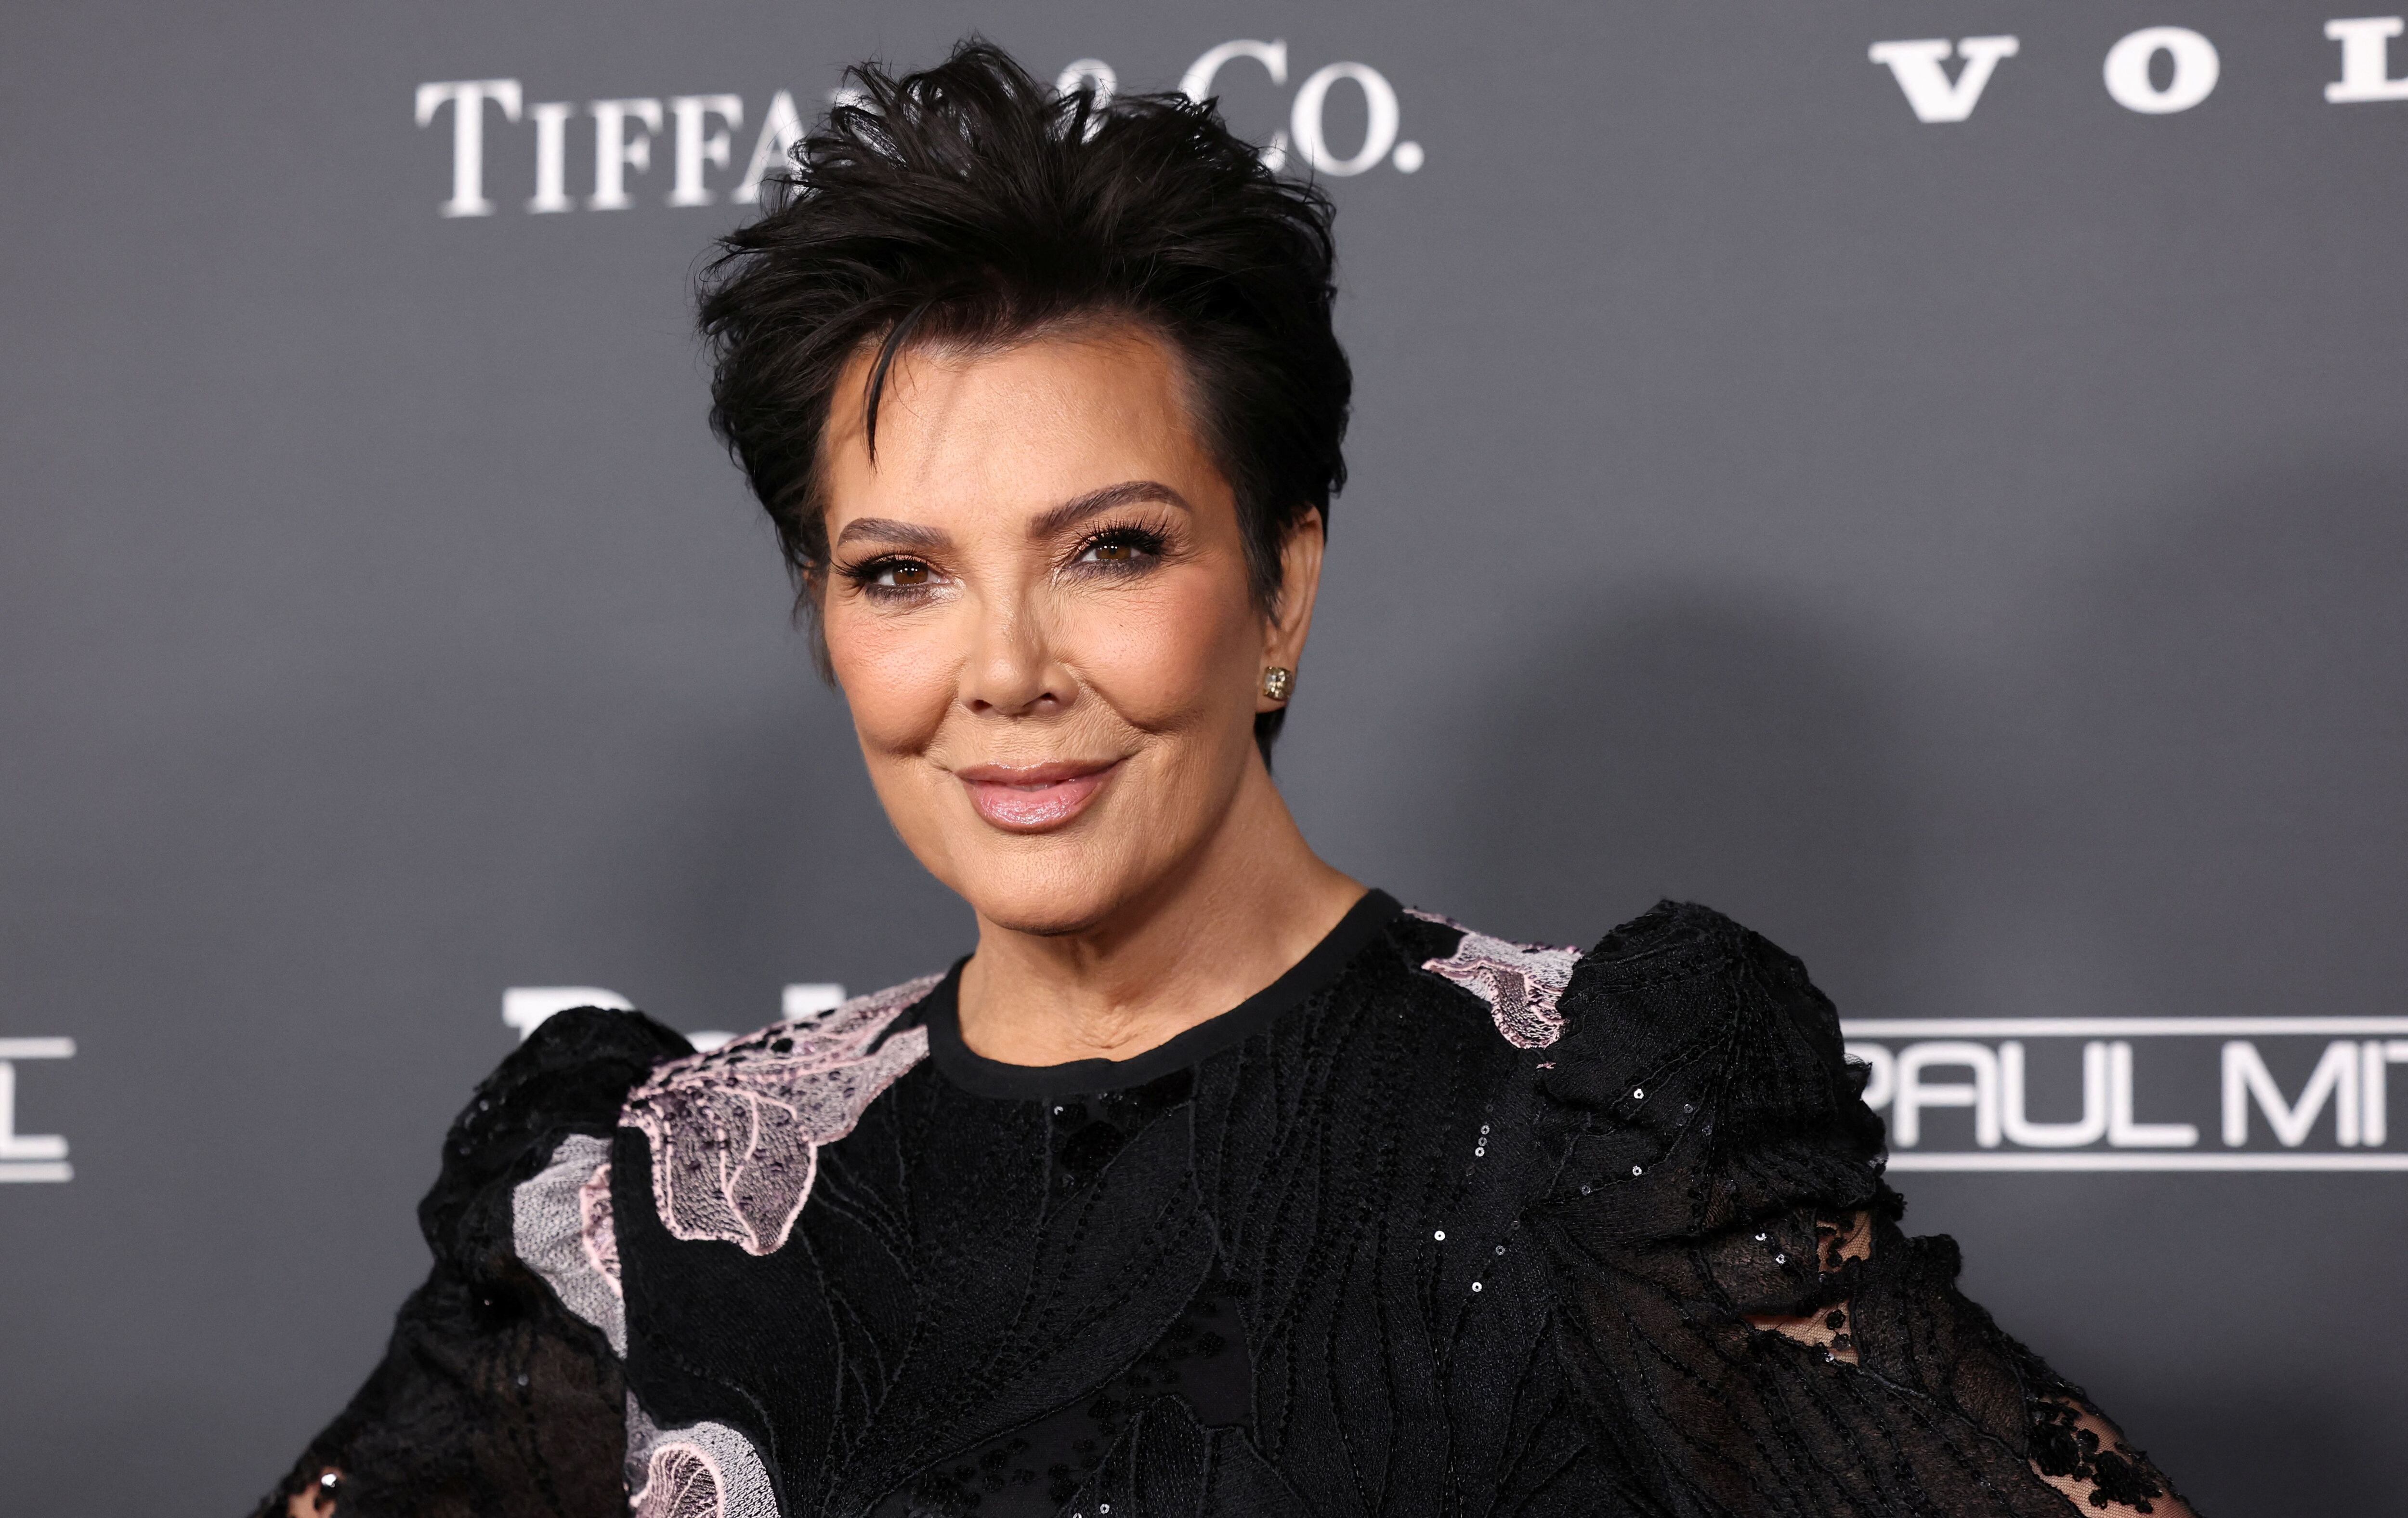 Rumores sugerían una relación amorosa entre Kris Jenner y O.J. Simpson, además de especulaciones sobre la paternidad de Khloé Kardashian. (Créditos: REUTERS/Mario Anzuoni)